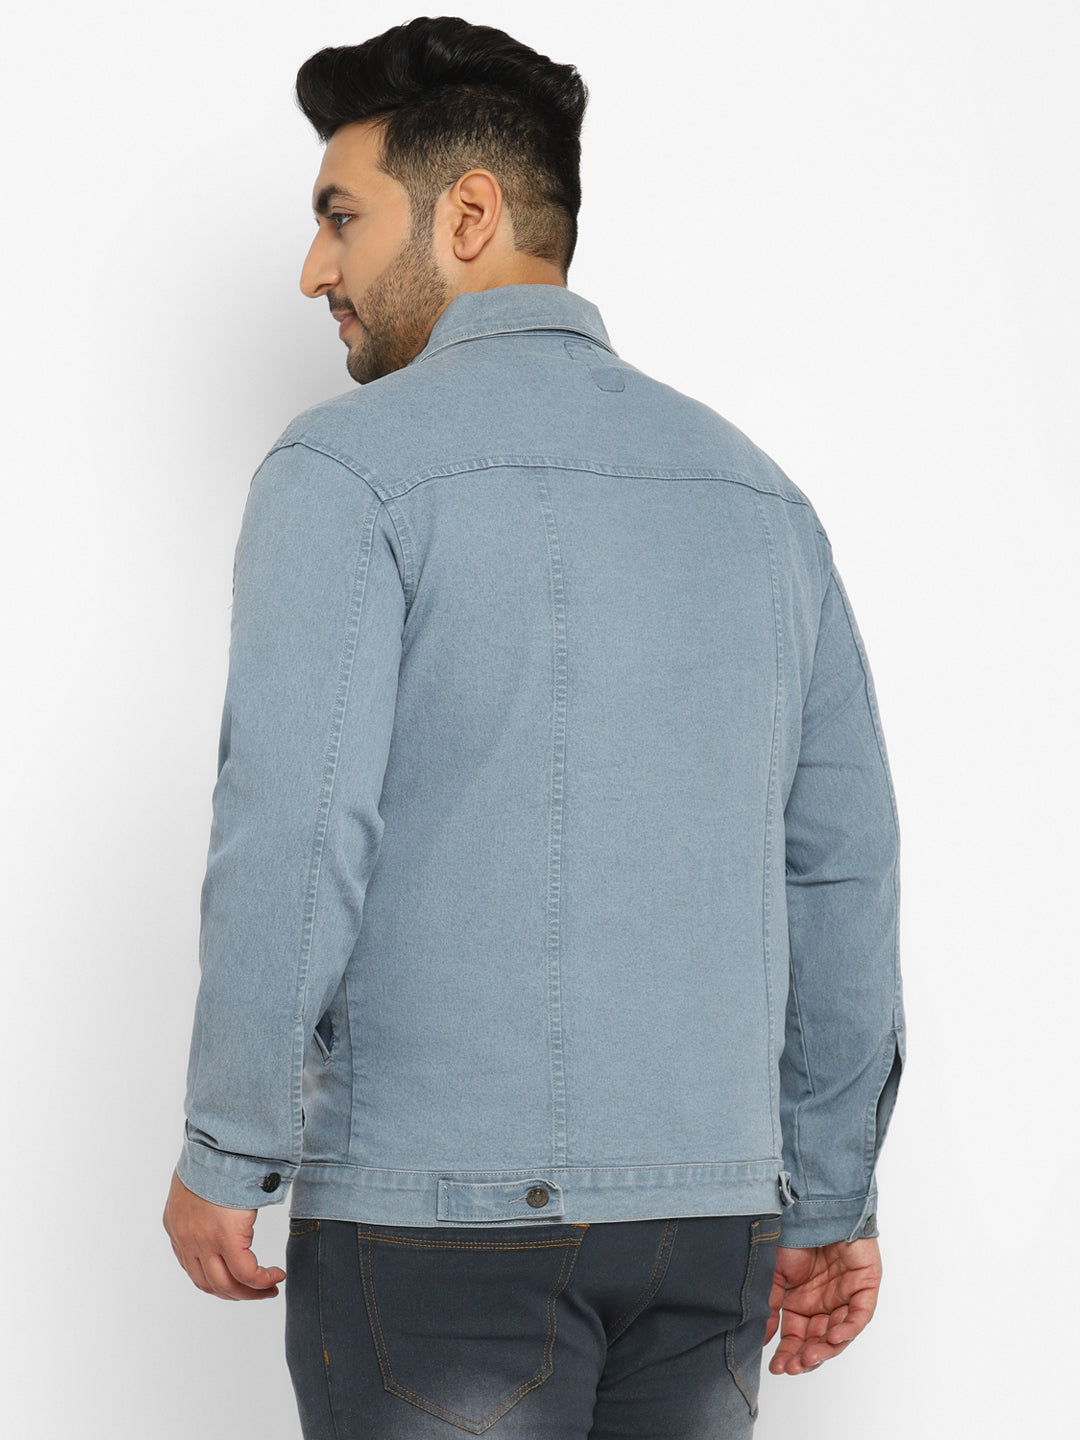 Plus Men's Light Grey Regular Fit Washed Full Sleeve Denim Jacket